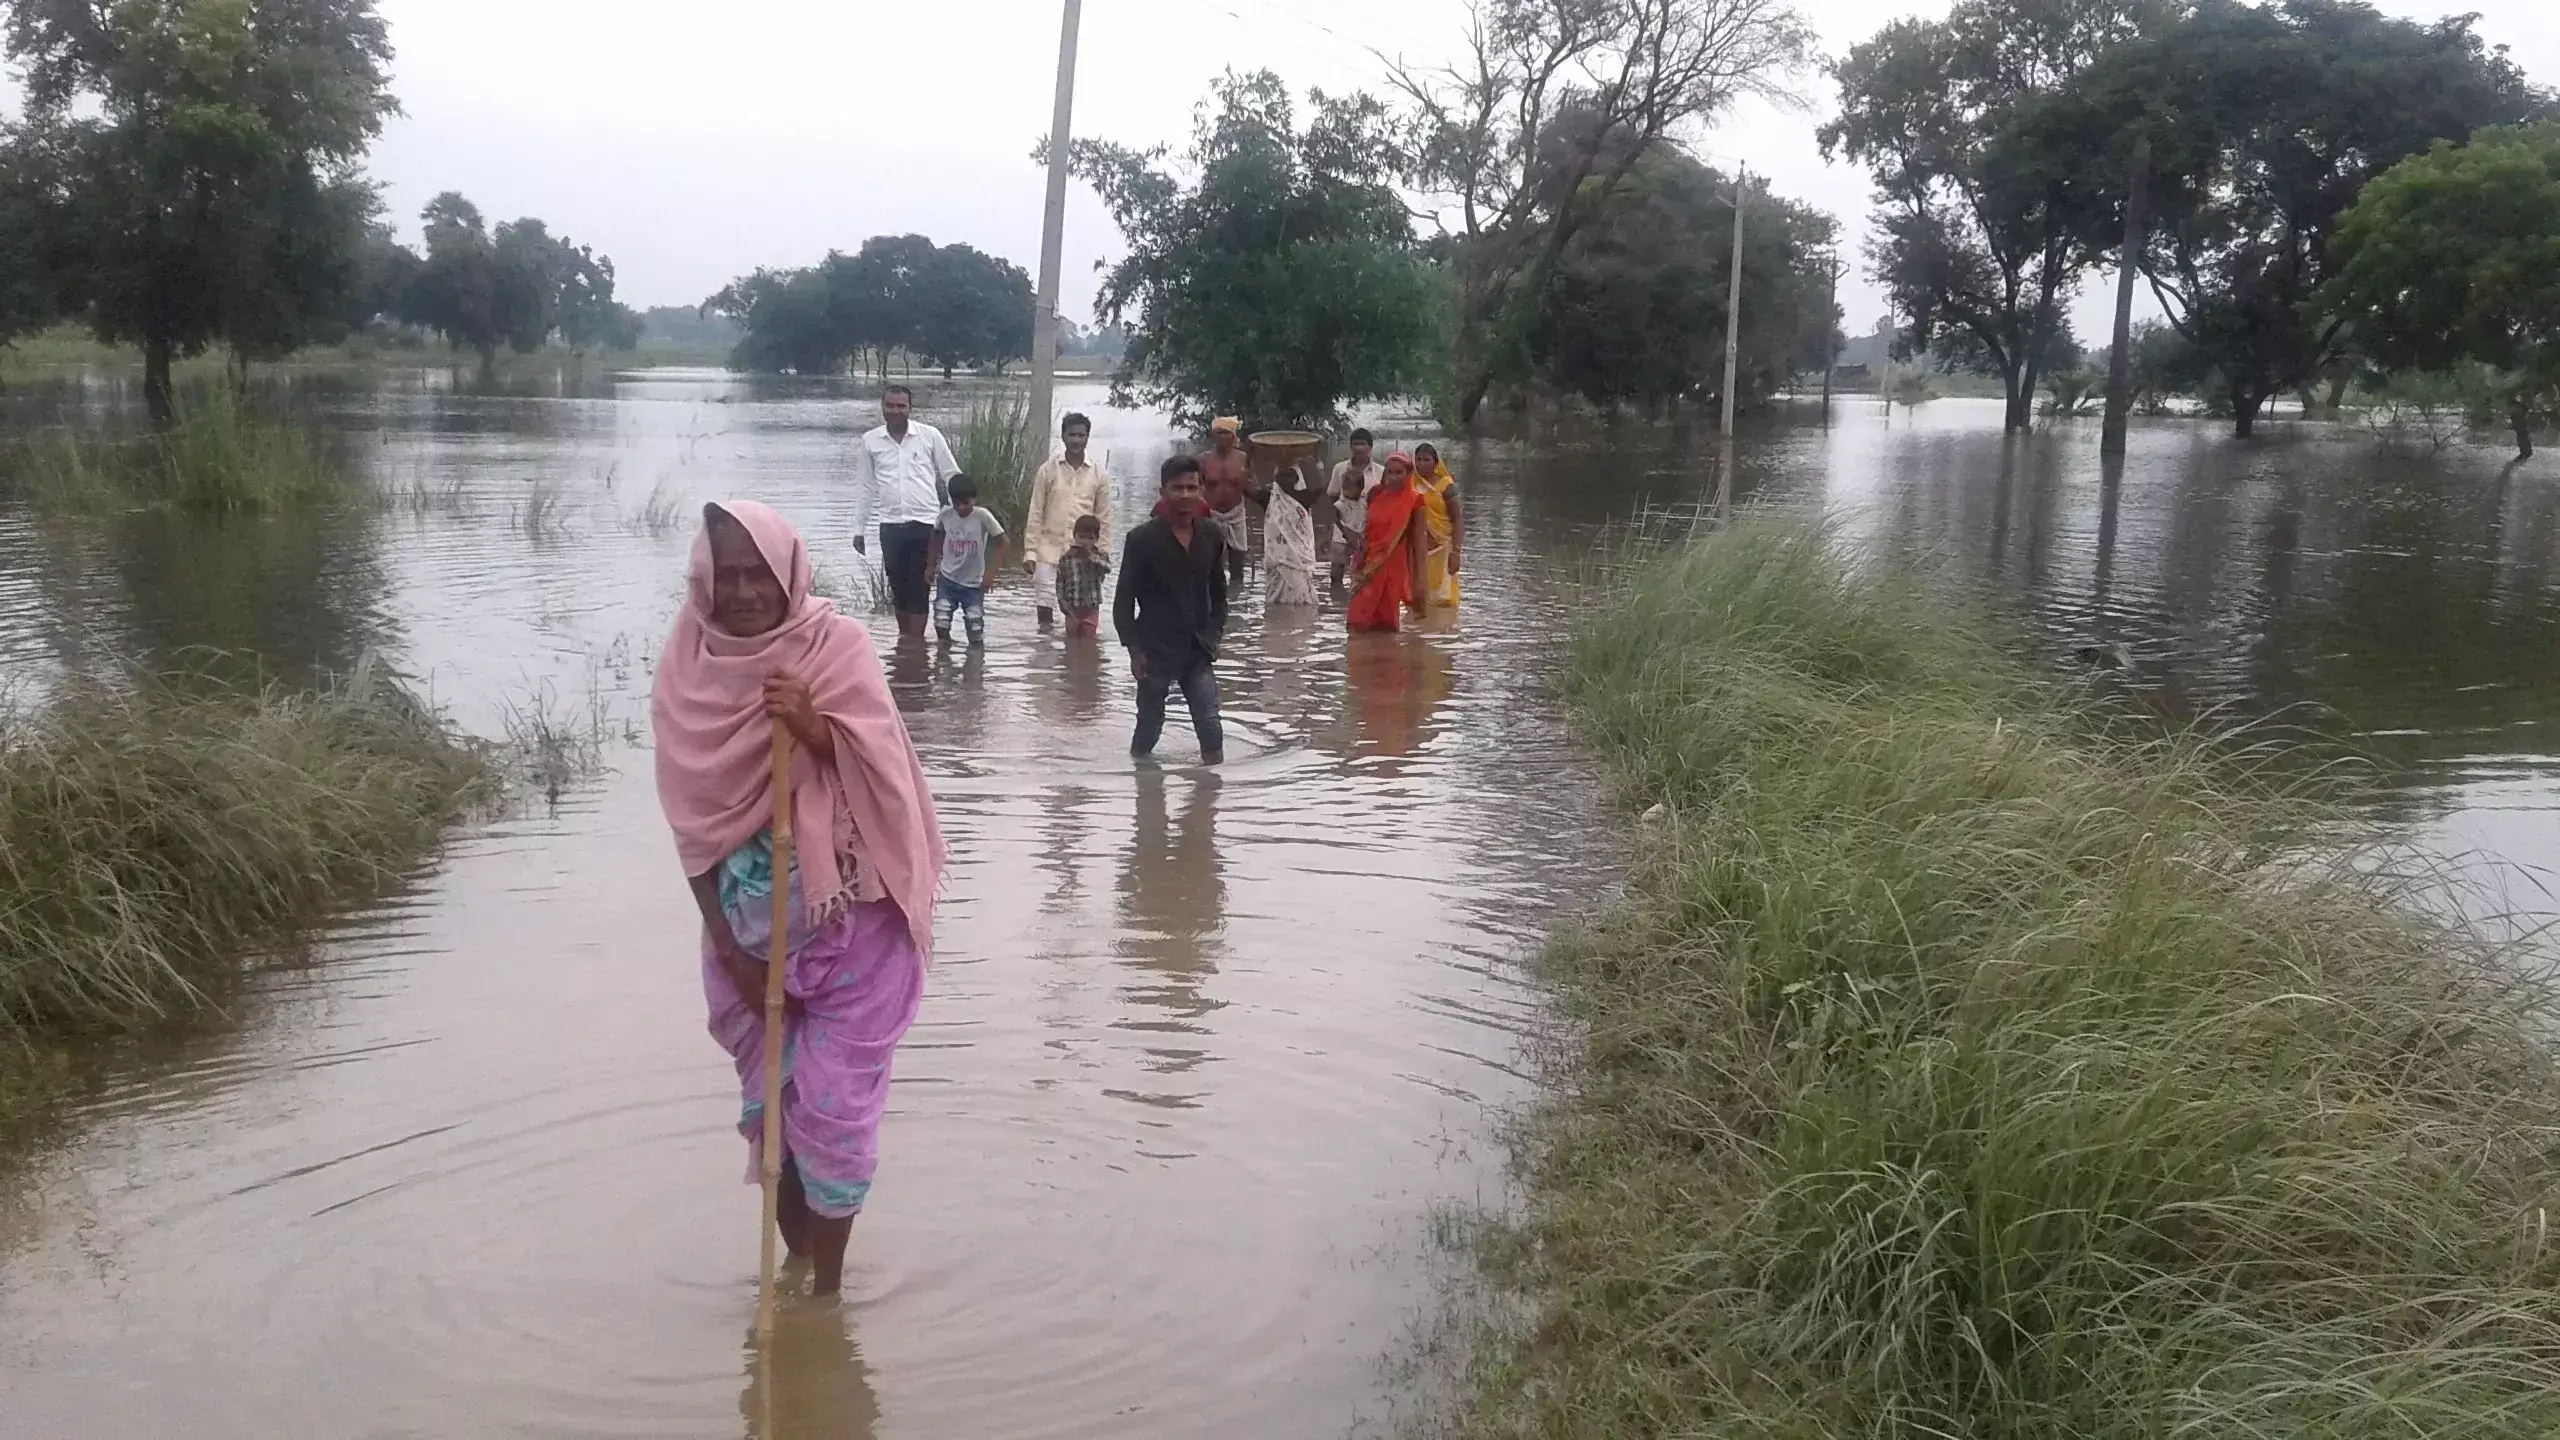 Bharatpur: निचले इलाकों में जलभराव की स्थिति, आवागमन में परेशानी का सामना करना पड़ा